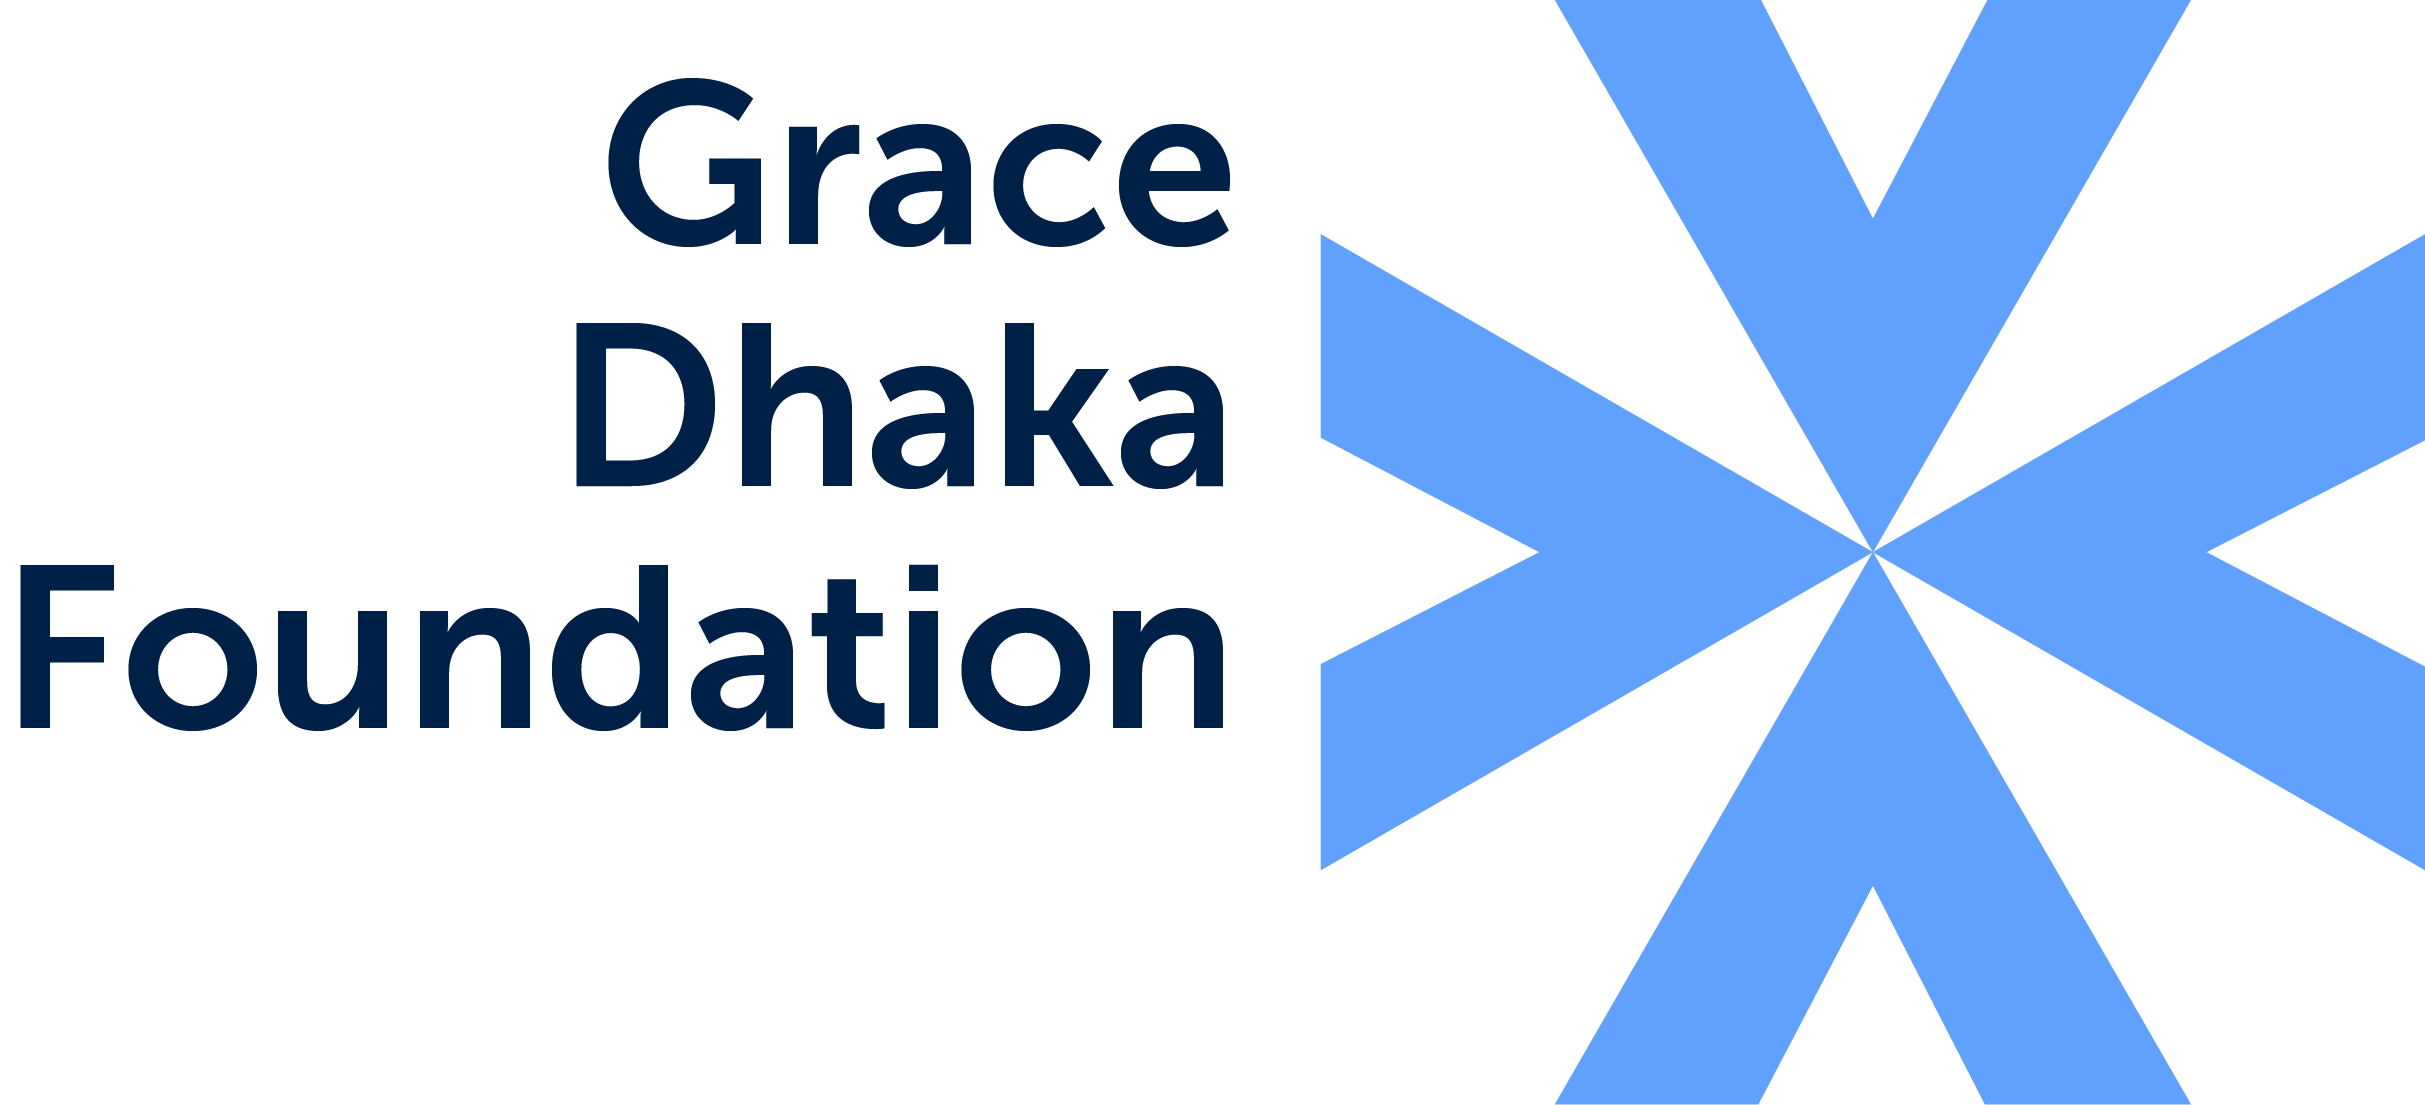 Grace Dhaka Foundation logo